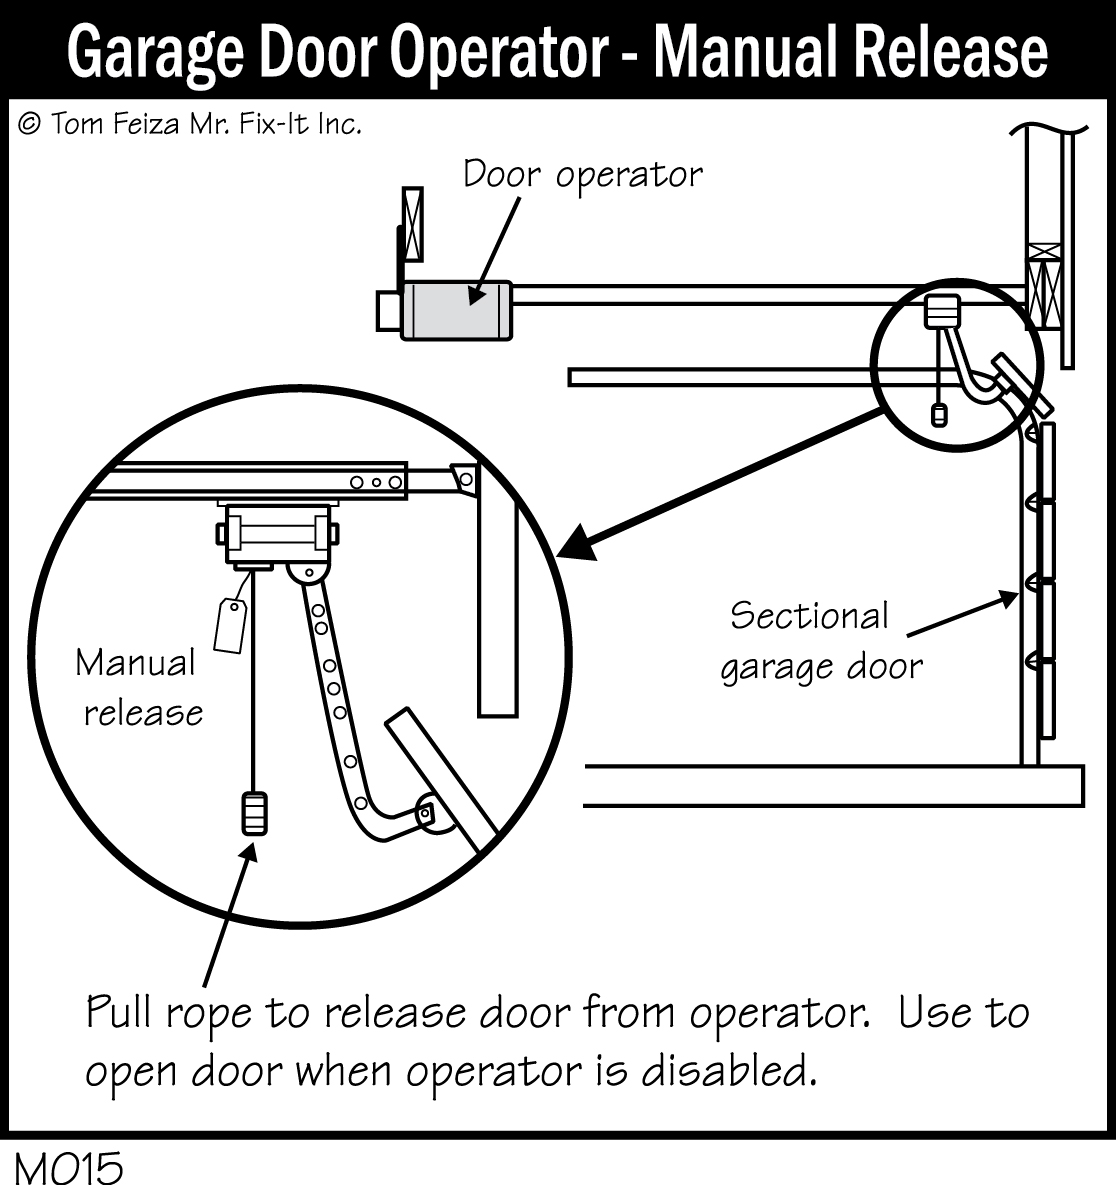 M015 - Garage Door Operator Manual Release